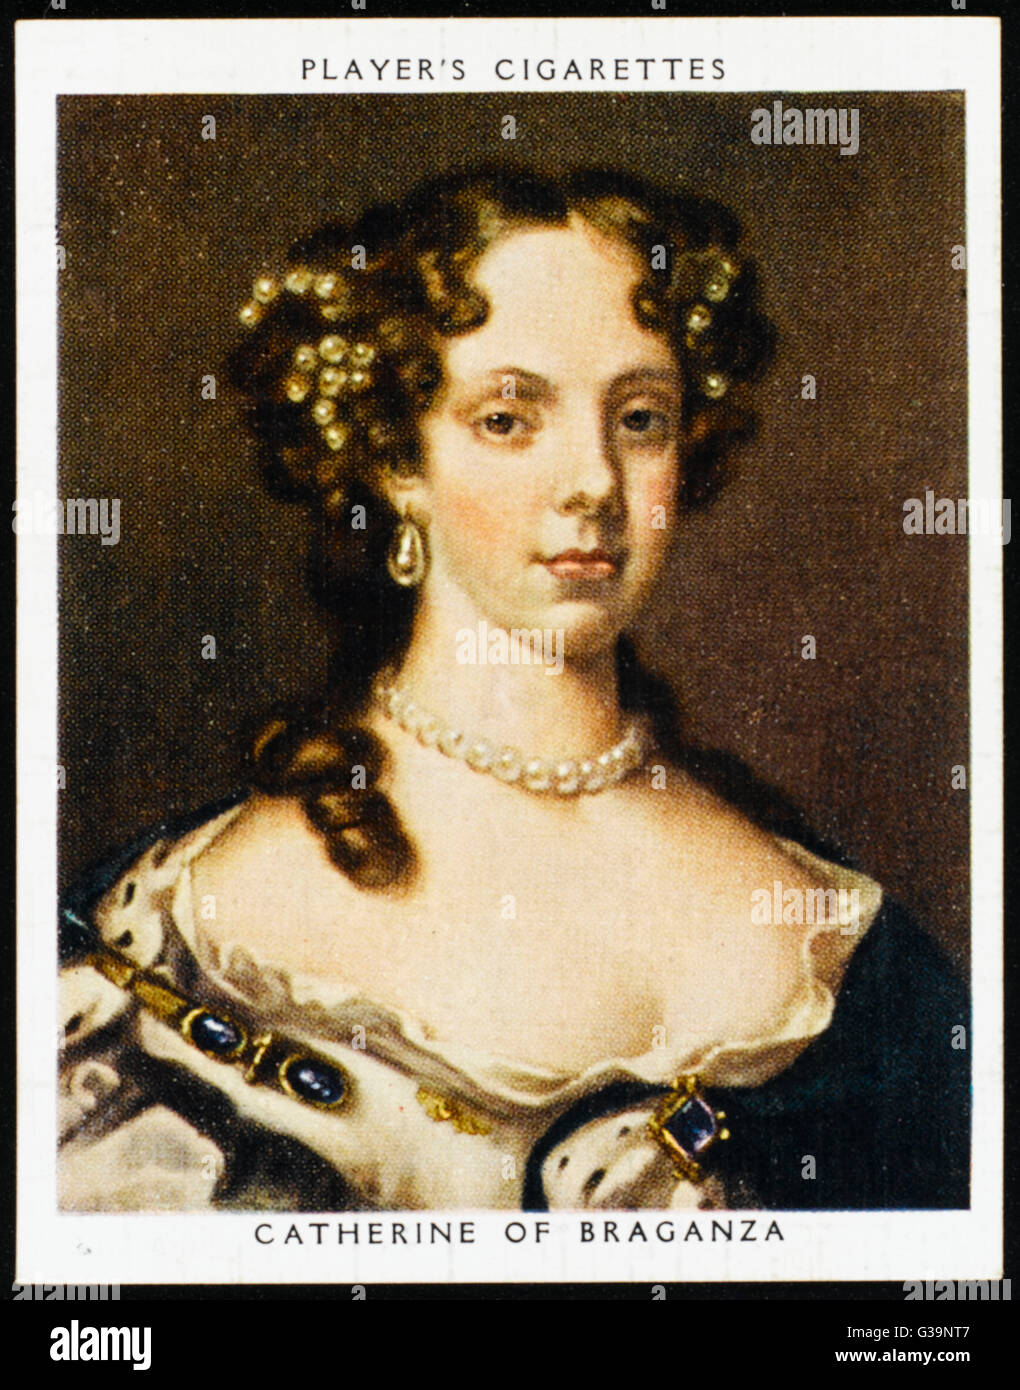 Caterina di Braganza regina di Carlo II data: 1638 - 1705 Foto Stock